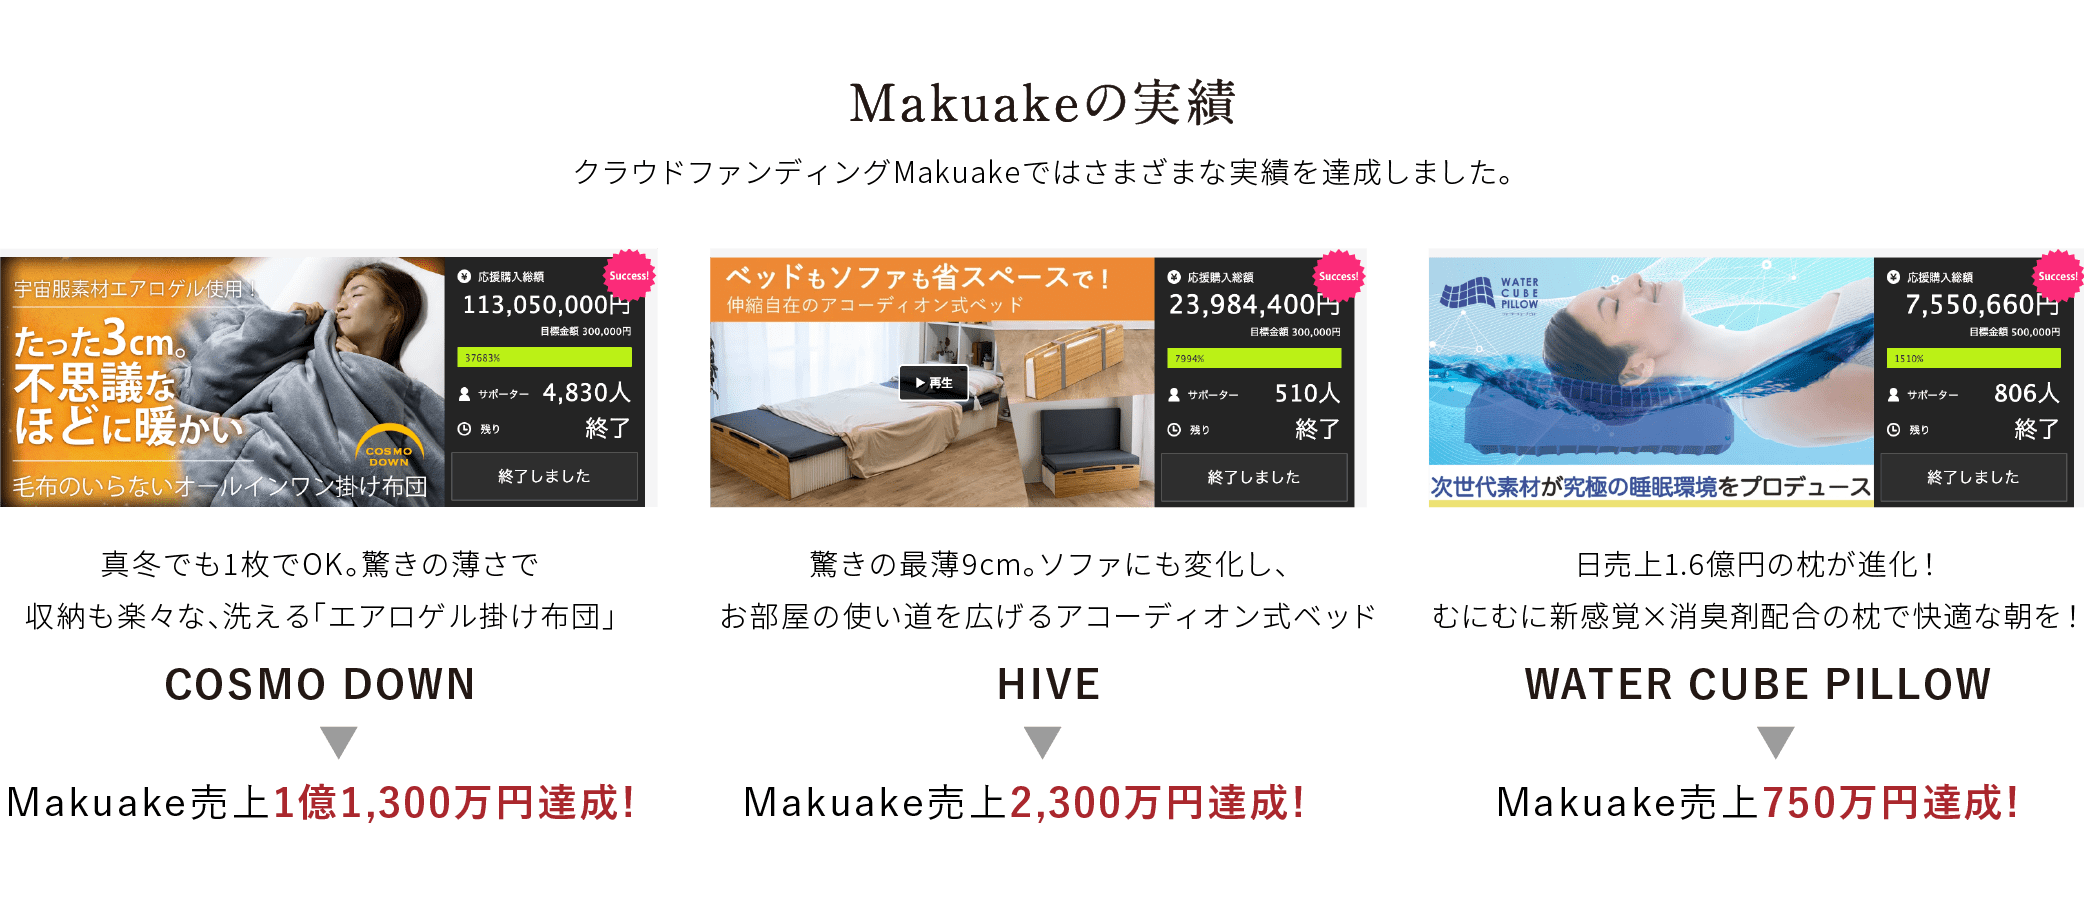 Makuakeの実績 クラウドファンディングMakuakeではさまざまな実績を達成しました。 真冬でも1枚でOK。驚きの薄さで収納も楽々な、洗える「エアロゲル掛け布団」COSMO DOWN Makuake売上1億1,300万円達成! 驚きの最薄9cm。ソファにも変化し、お部屋の使い道を広げるアコーディオン式ベッド HIVE Makuake売上2,300万円達成! 日売上1.6億円の枕が進化！むにむに新感覚×消臭剤配合の枕で快適な朝を！WATER CUBE PILLOW Makuake売上750万円達成!